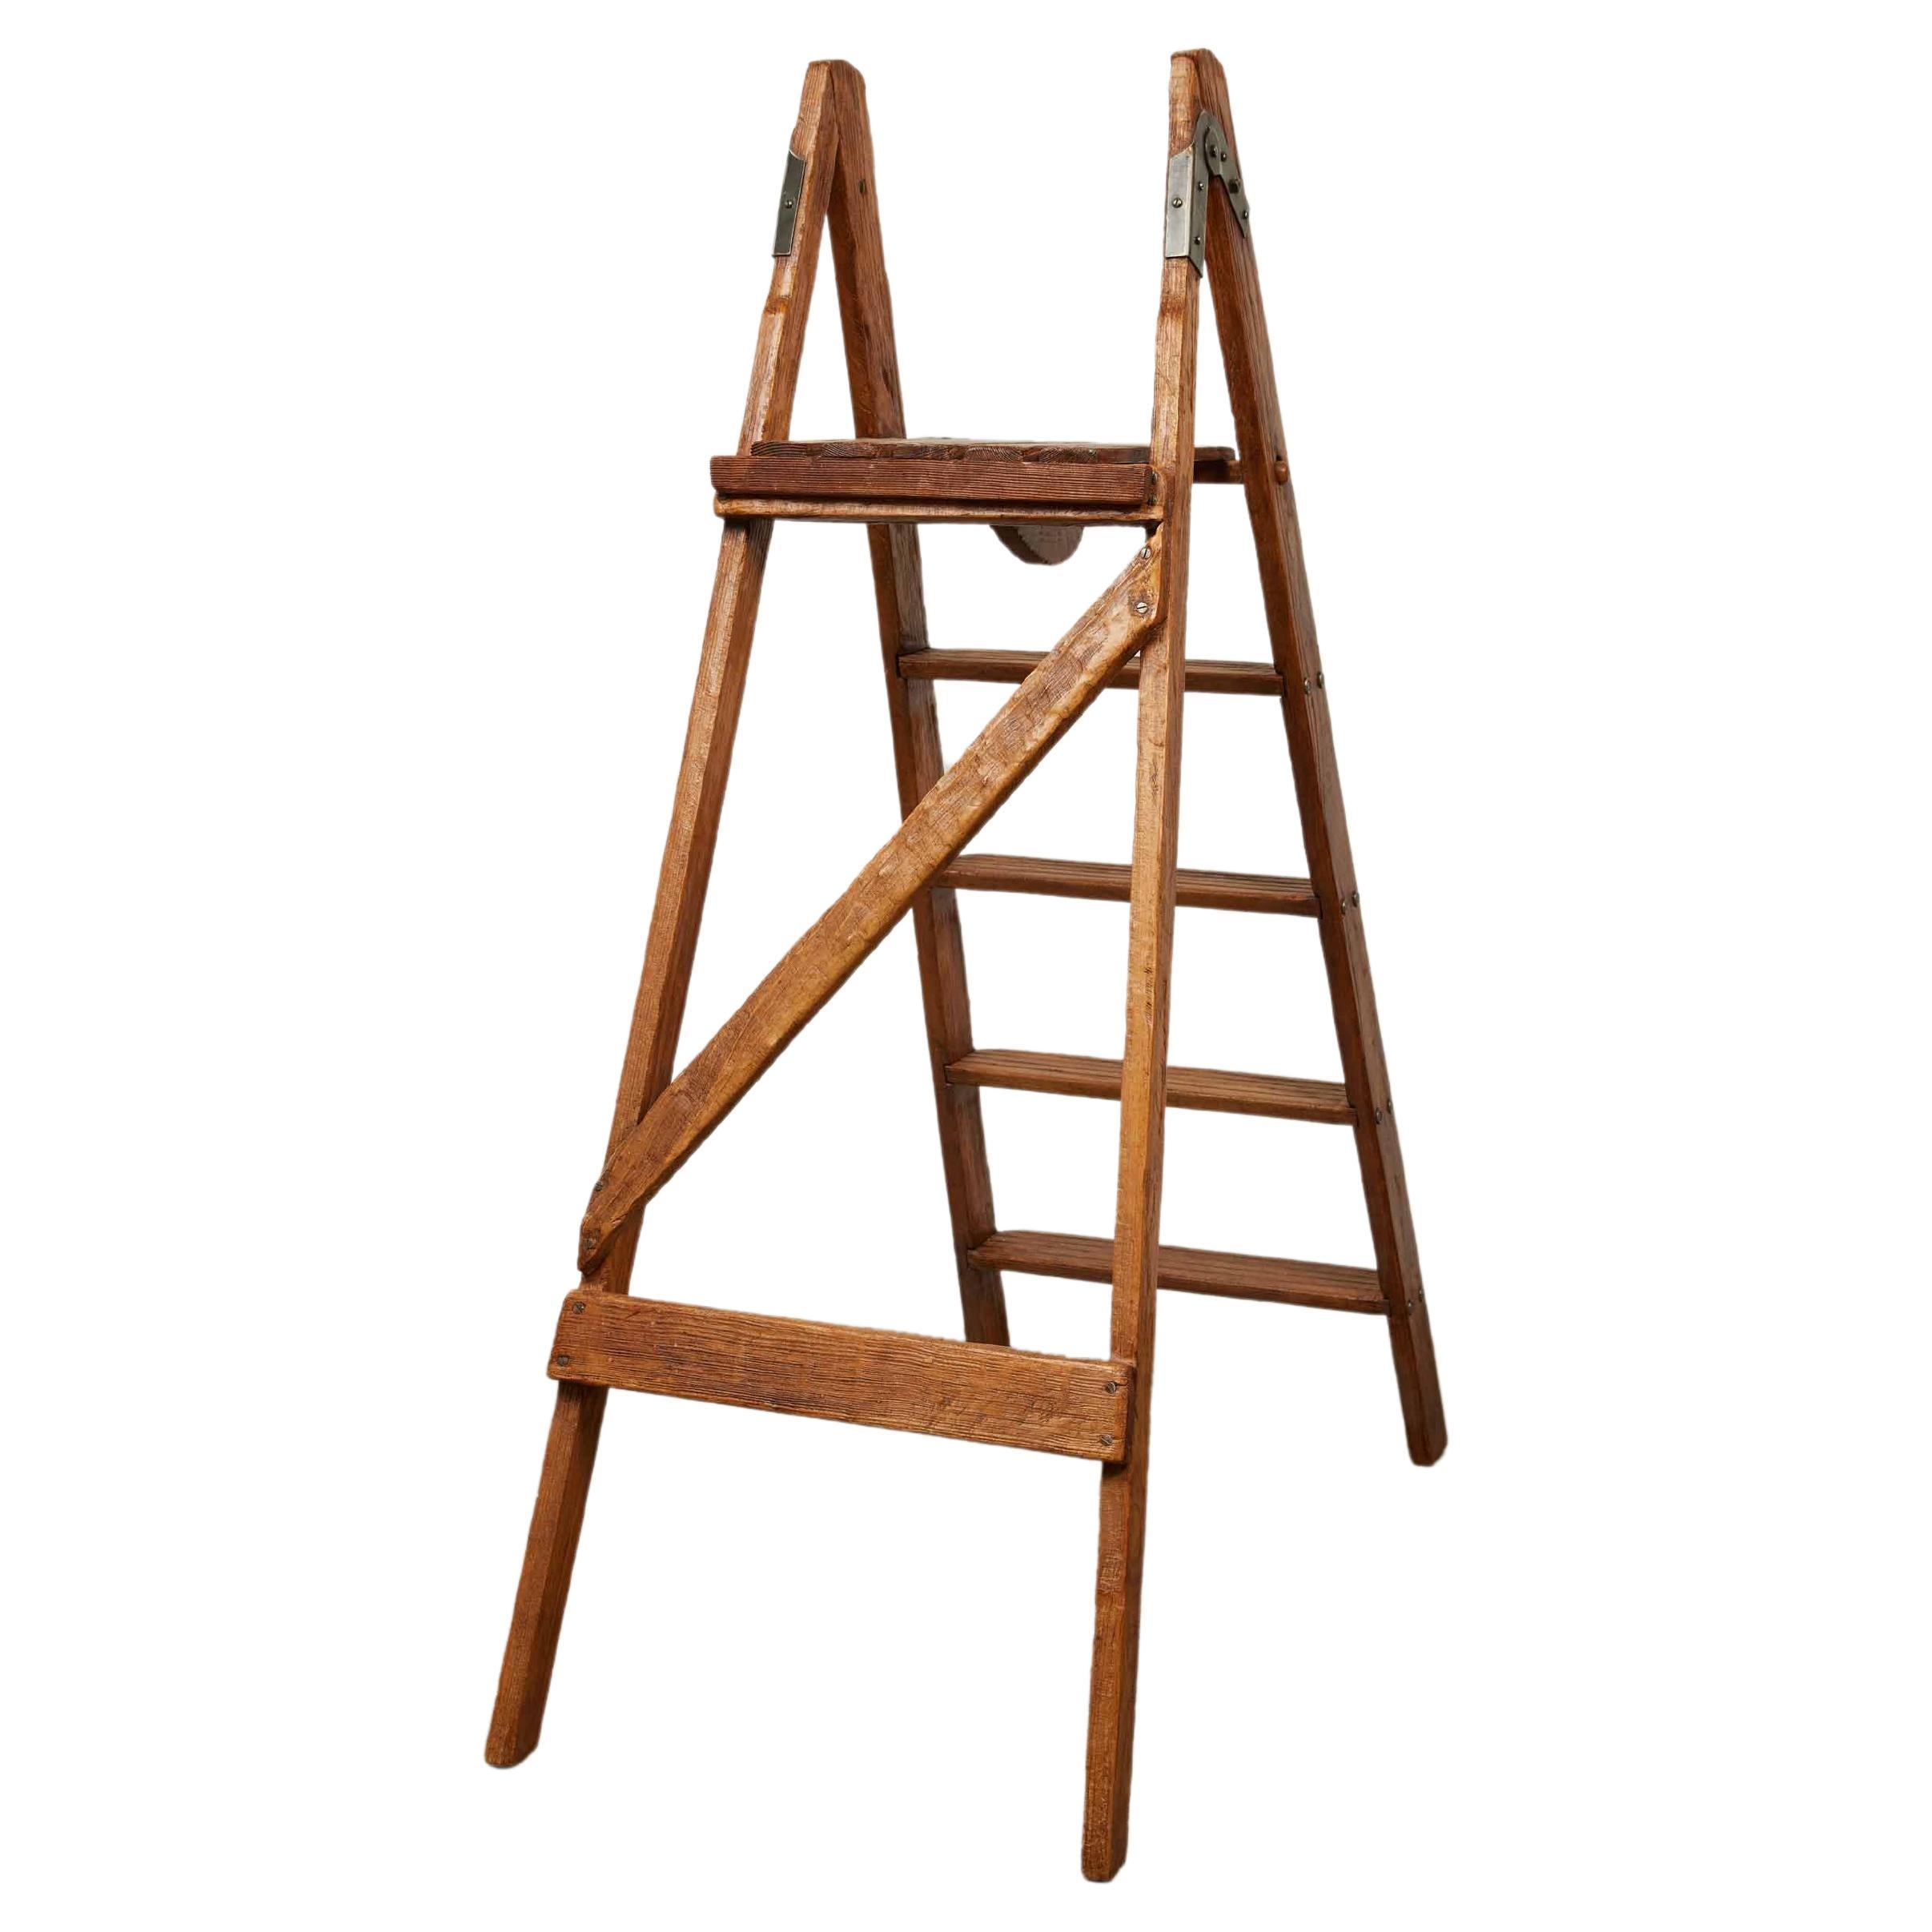 Antike englische Folding Library Step Ladder, 1800er Jahre mit gealterten Eisenbeschlägen verziert.

Diese exquisite antike englische Bibliotheksleiter aus den 1800er Jahren ist ein Zeugnis für die unübertroffene Handwerkskunst dieser Zeit. Diese